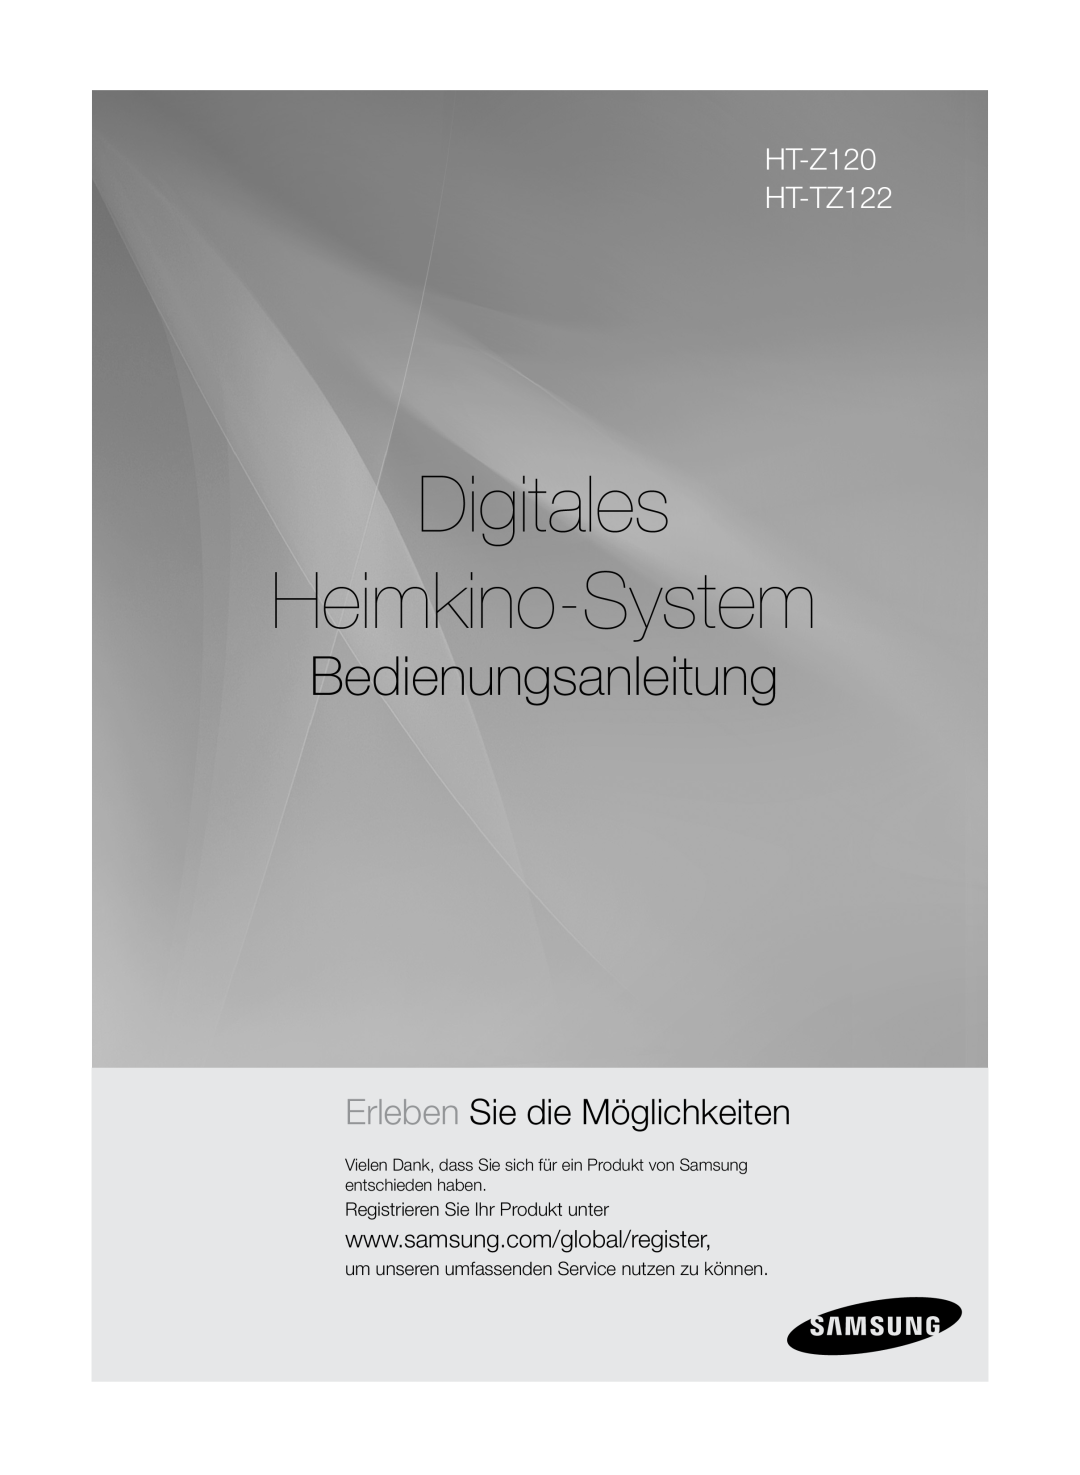 Samsung HT-Z120T/XEF, HT-Z120T/EDC manual Digitales Heimkino-System, Bedienungsanleitung, Erleben Sie die Möglichkeiten 